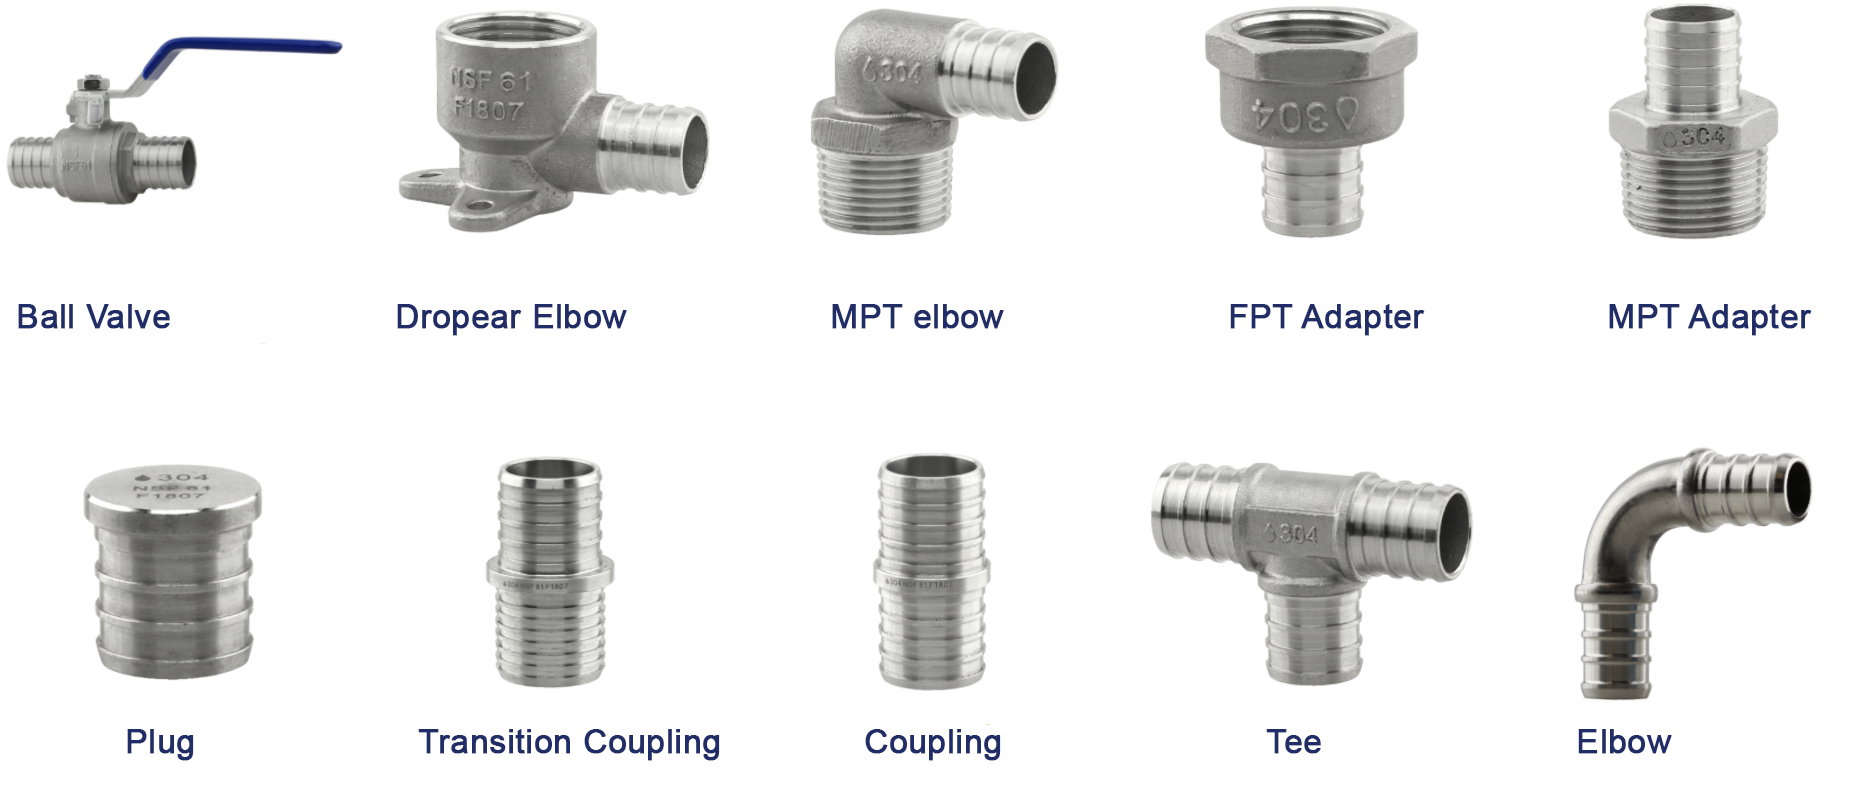 Raccord et valves de sertissage en acier inoxydable pour tuyaux en PEX